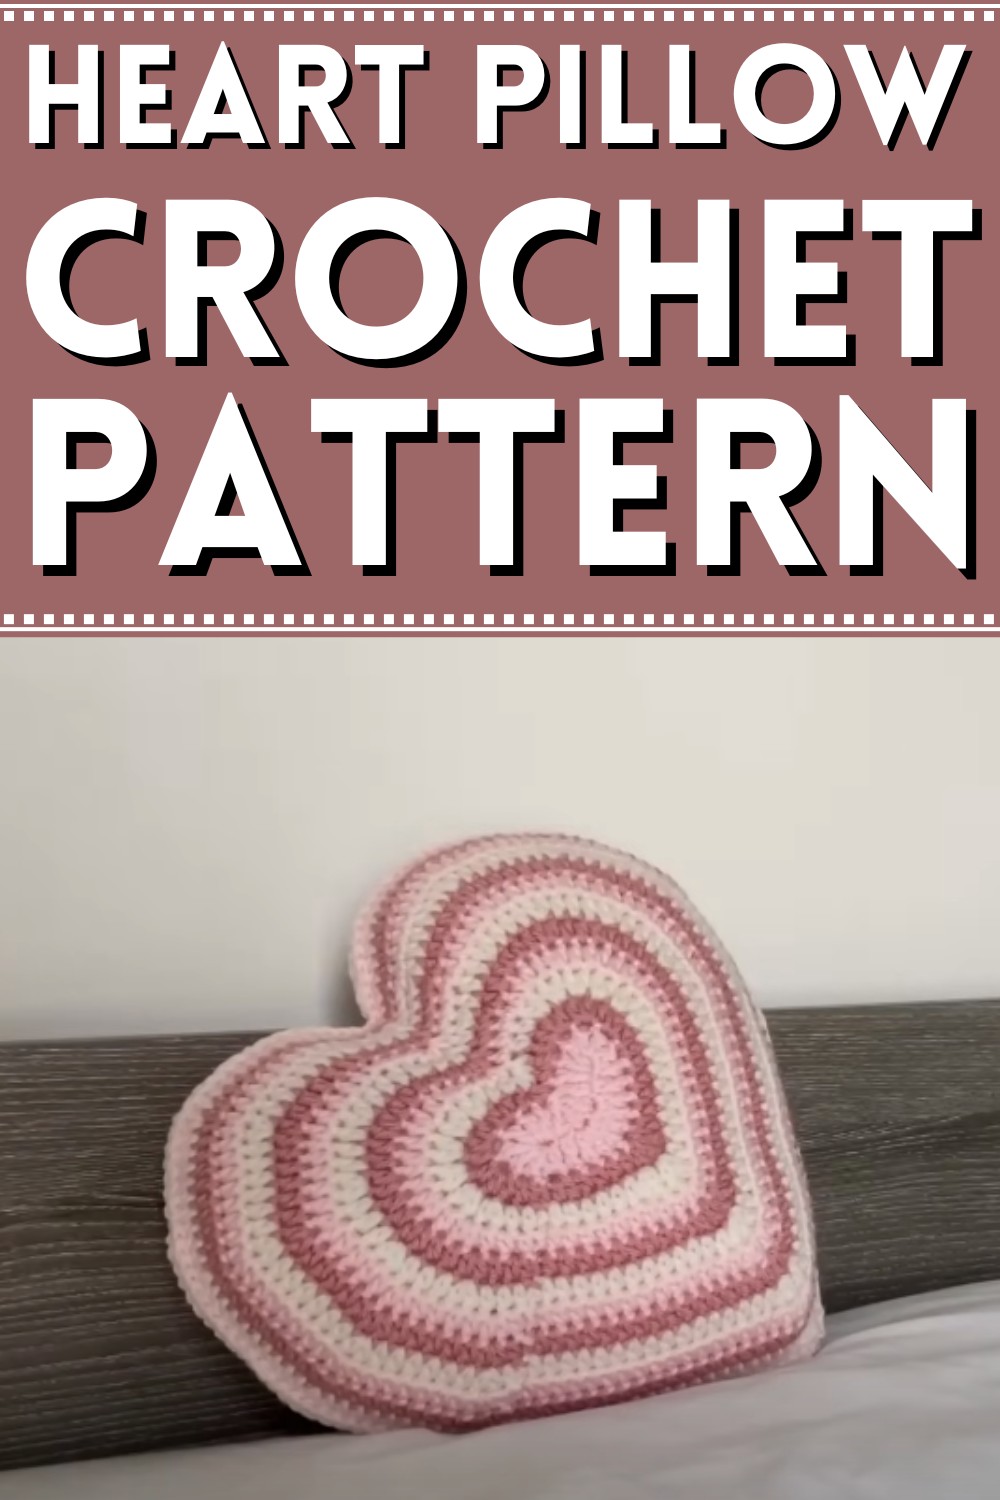 Crochet A Heart-shaped Cushion/pillow